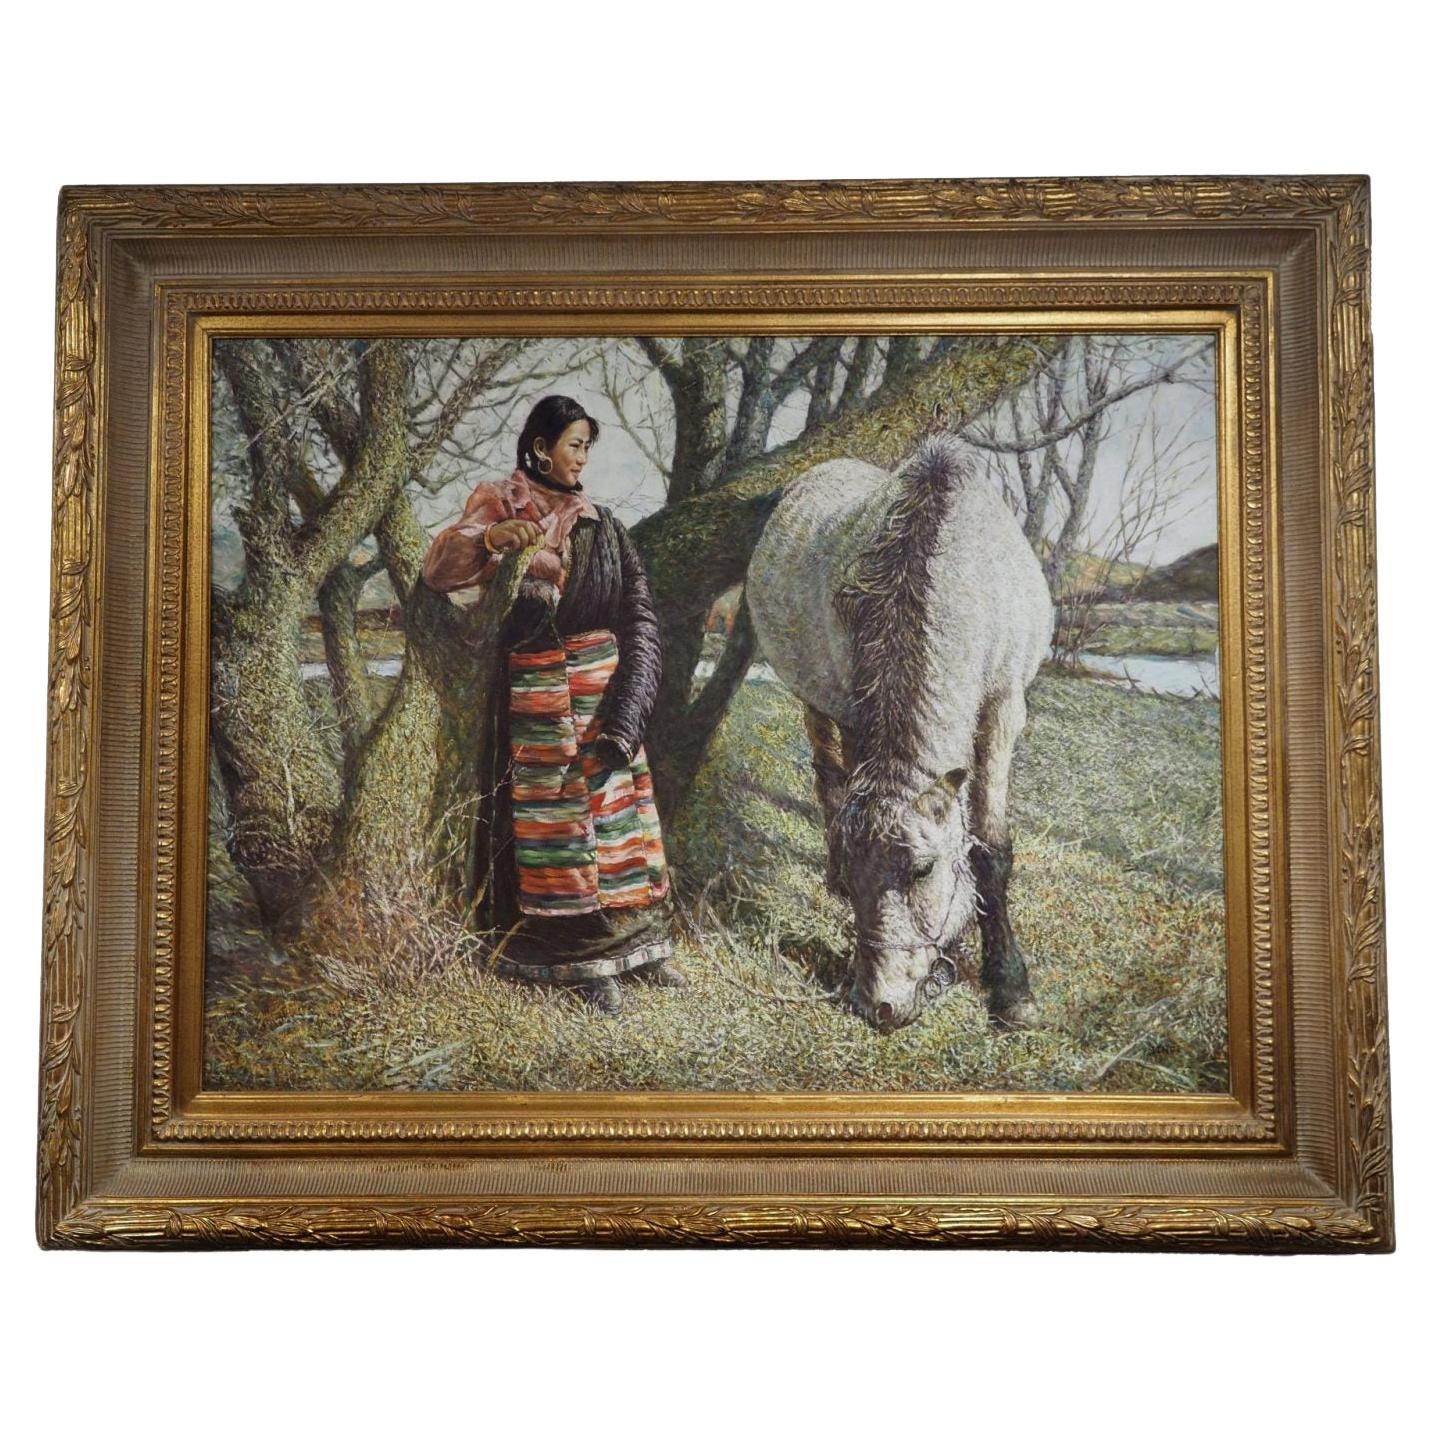 Frau und ihr Pferd, Original, Öl auf Leinwand